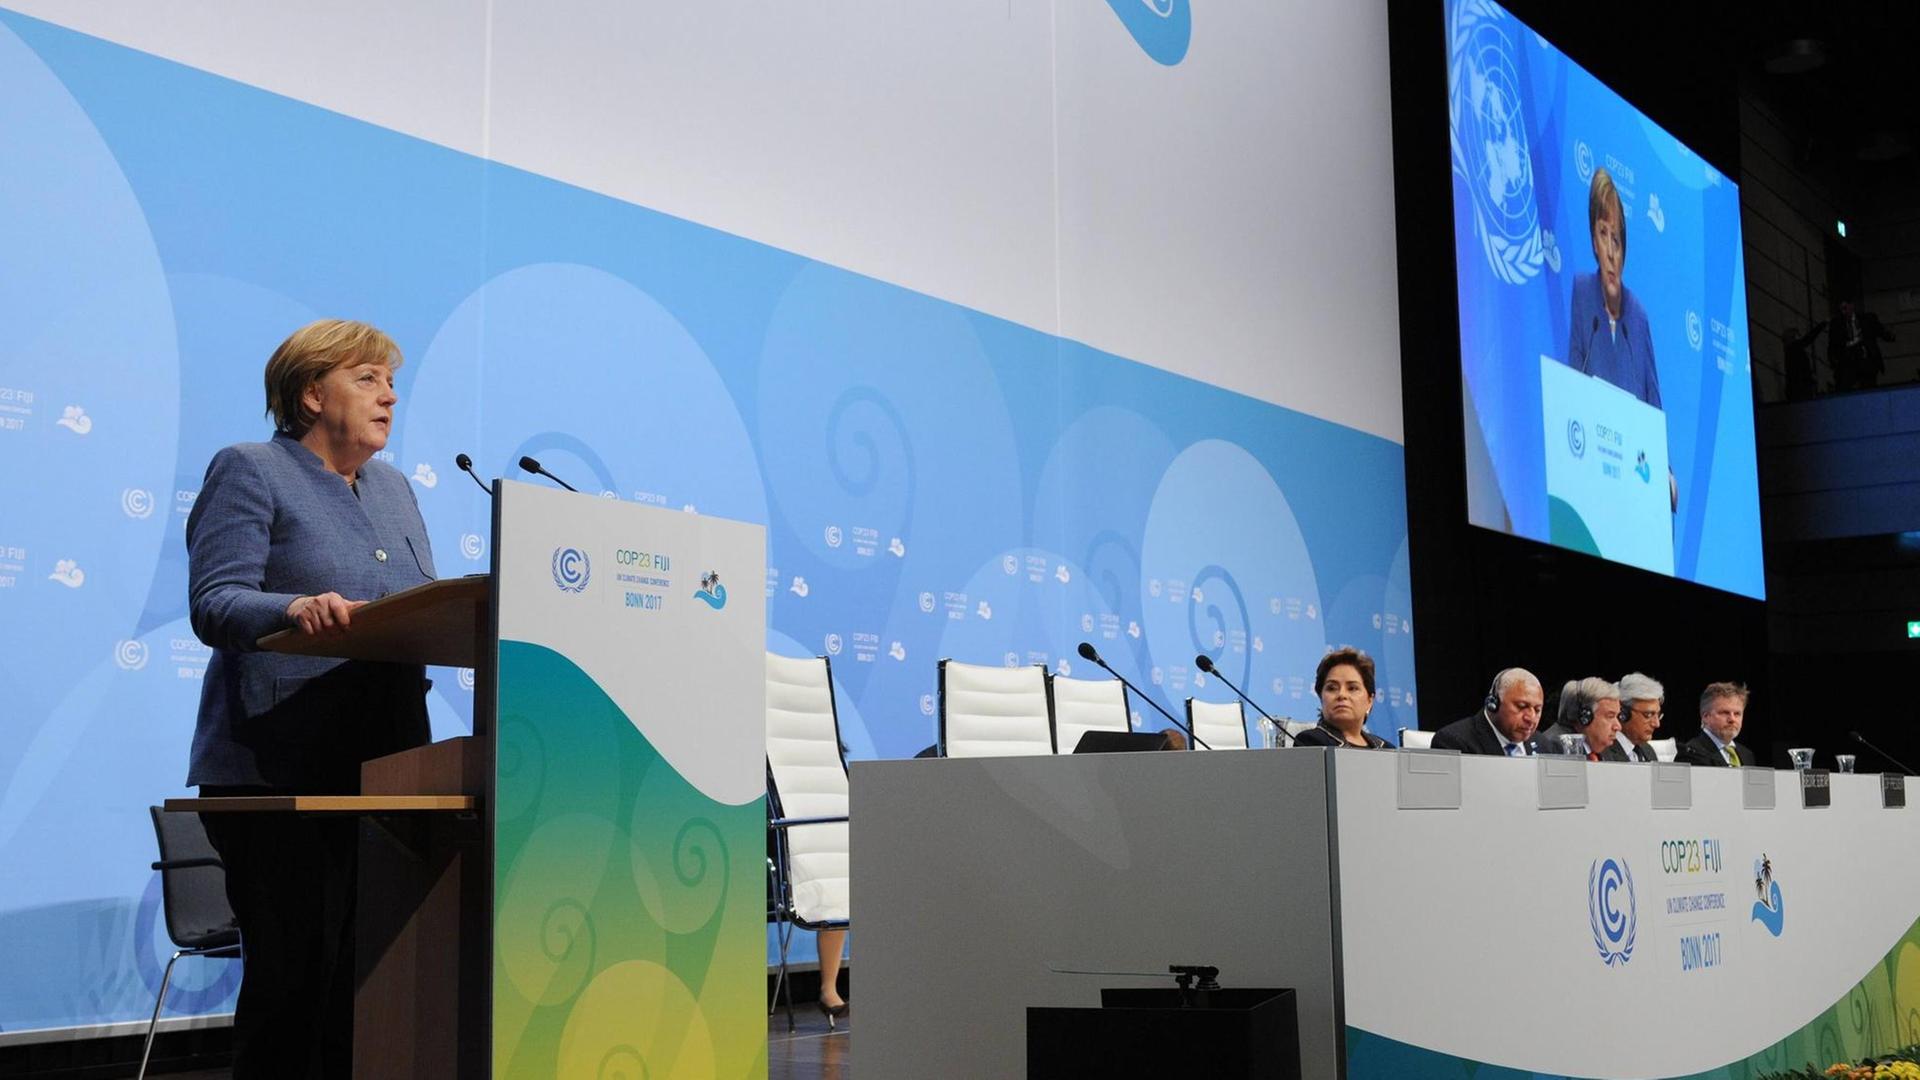 Bundeskanzlerin Angela Merkel bei ihrer Rede auf dem UN-Weltklimagipfel COP23 in Bonn